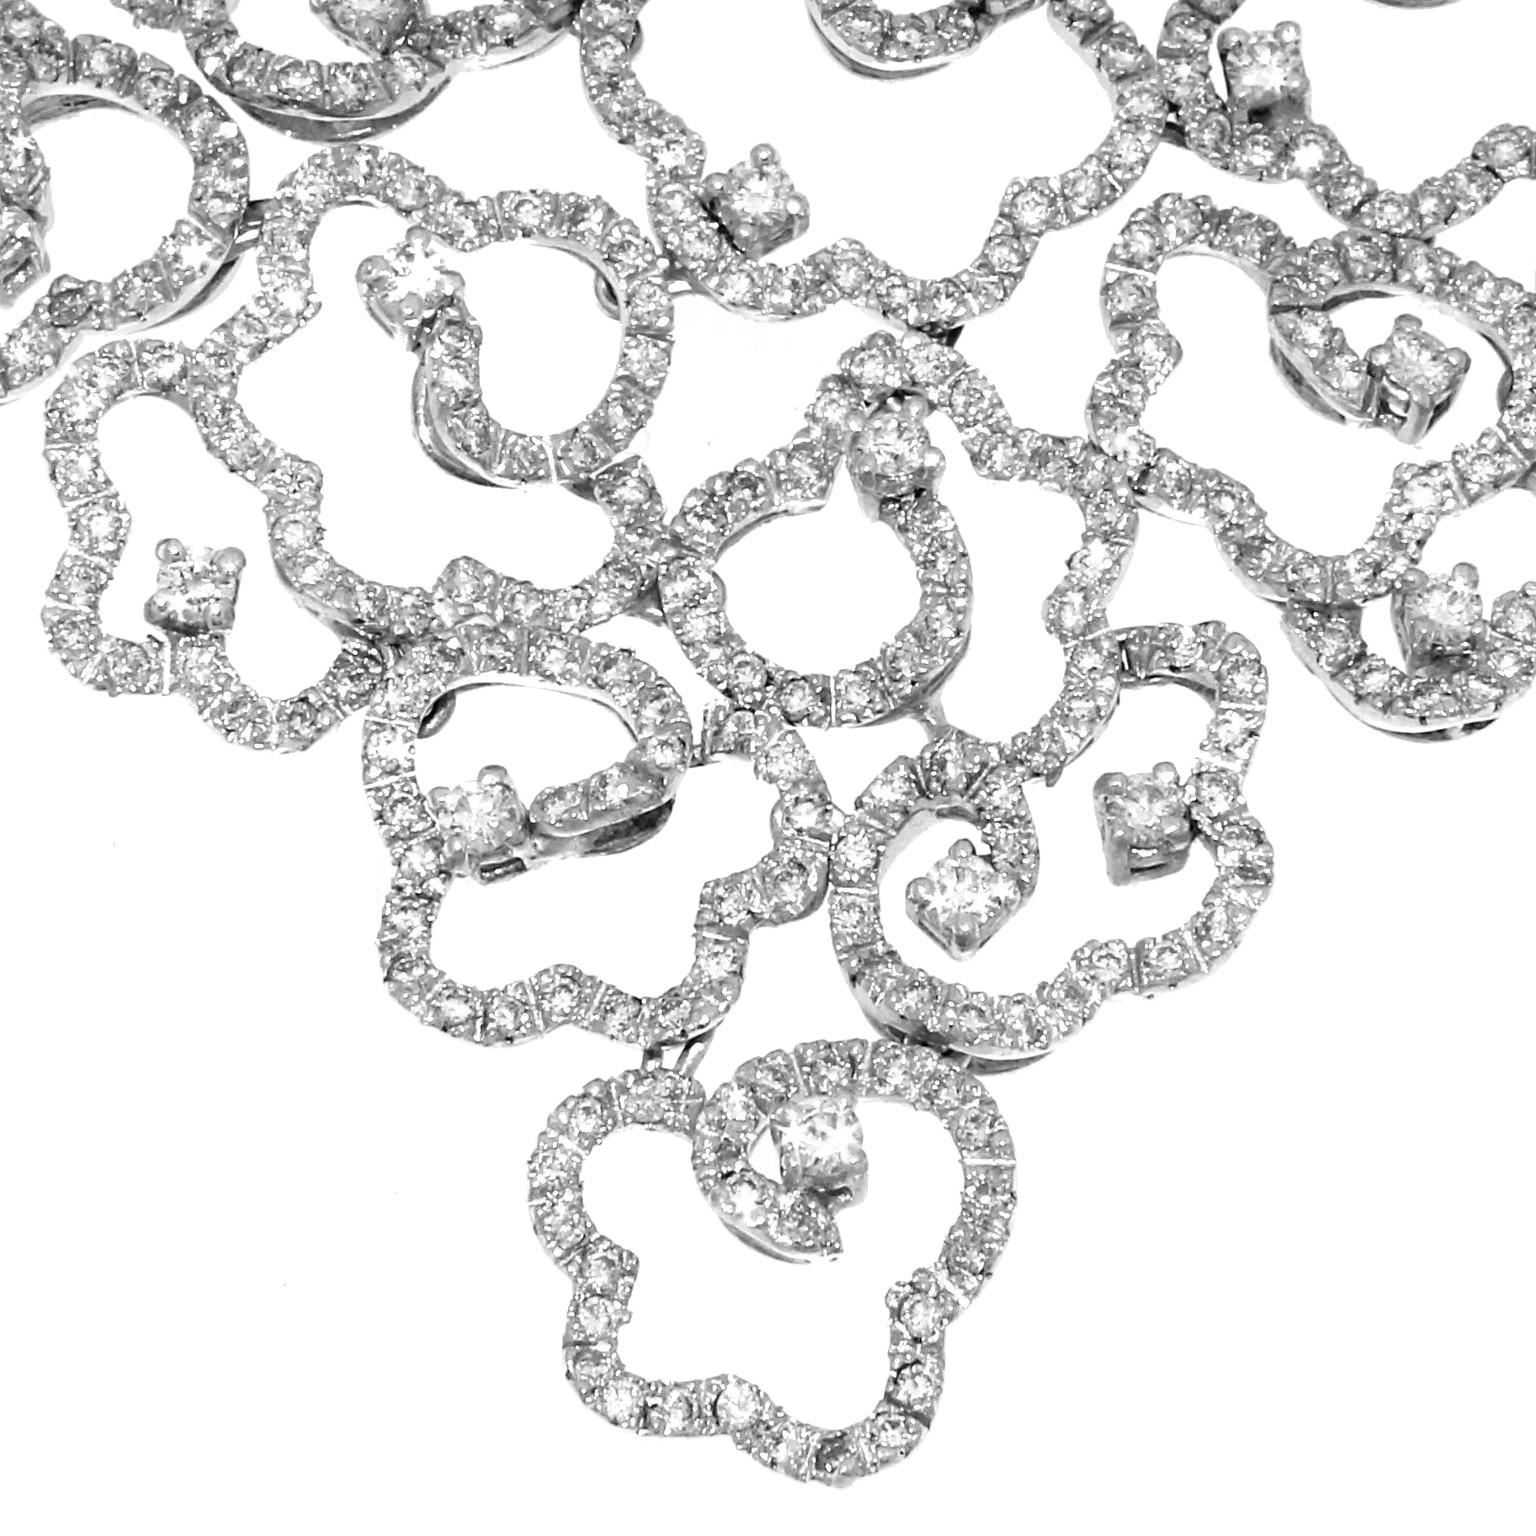 Collier, bracelet et boucles d'oreilles de la collection Bandhu en or blanc et diamants blancs
Cette splendide collection a été créée avec une alternance d'éléments de formes florales afin de former un collier aux formes équilibrées et légères, très